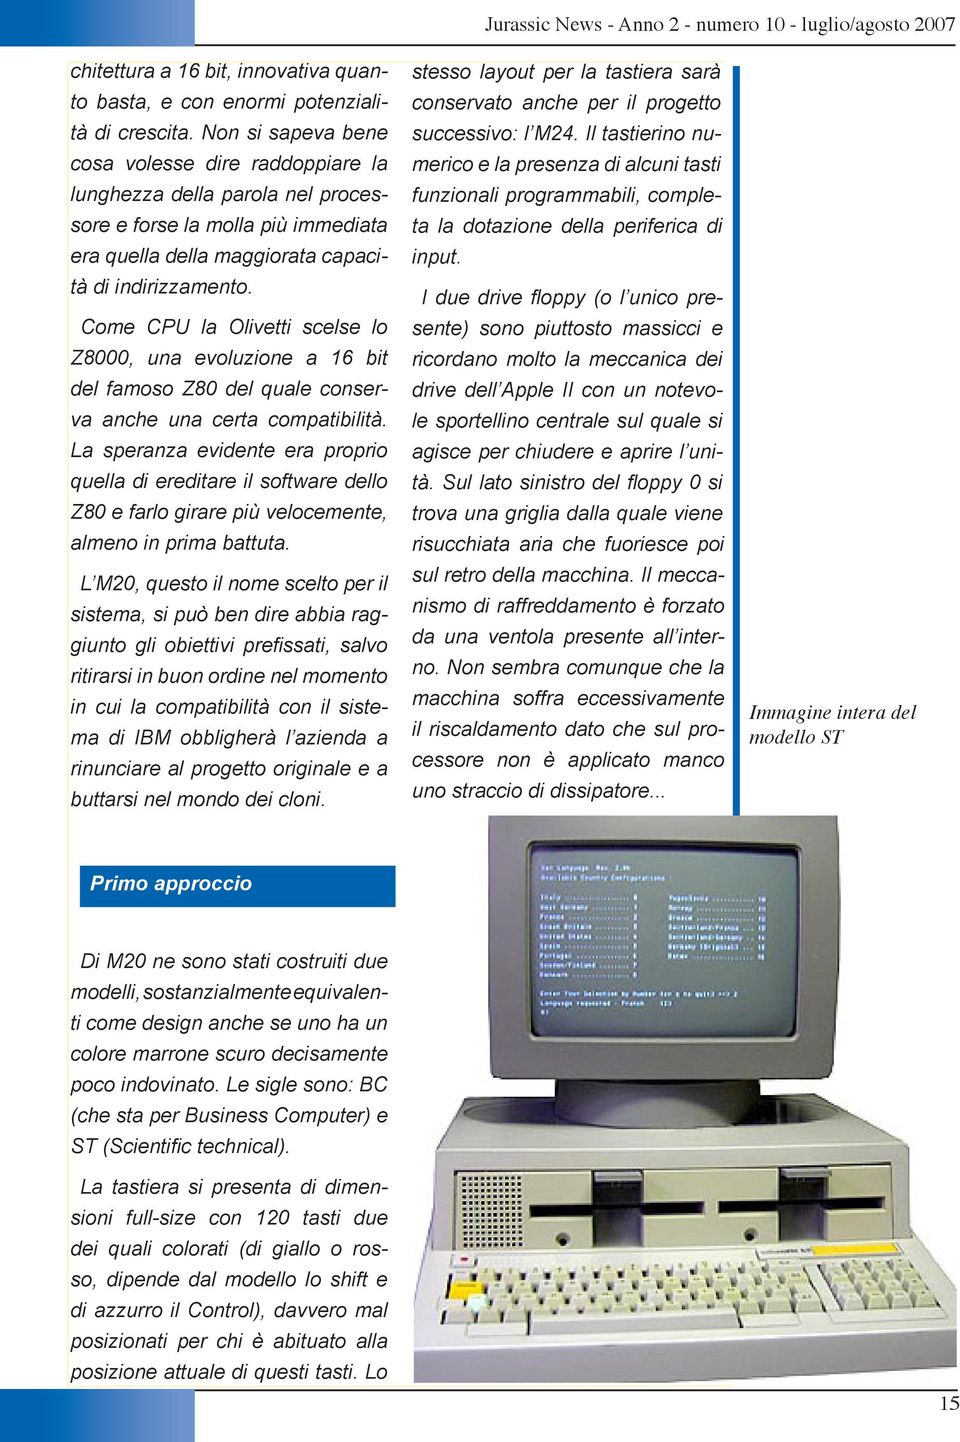 Come CPU la Olivetti scelse lo Z8000, una evoluzione a 16 bit del famoso Z80 del quale conserva anche una certa compatibilità.